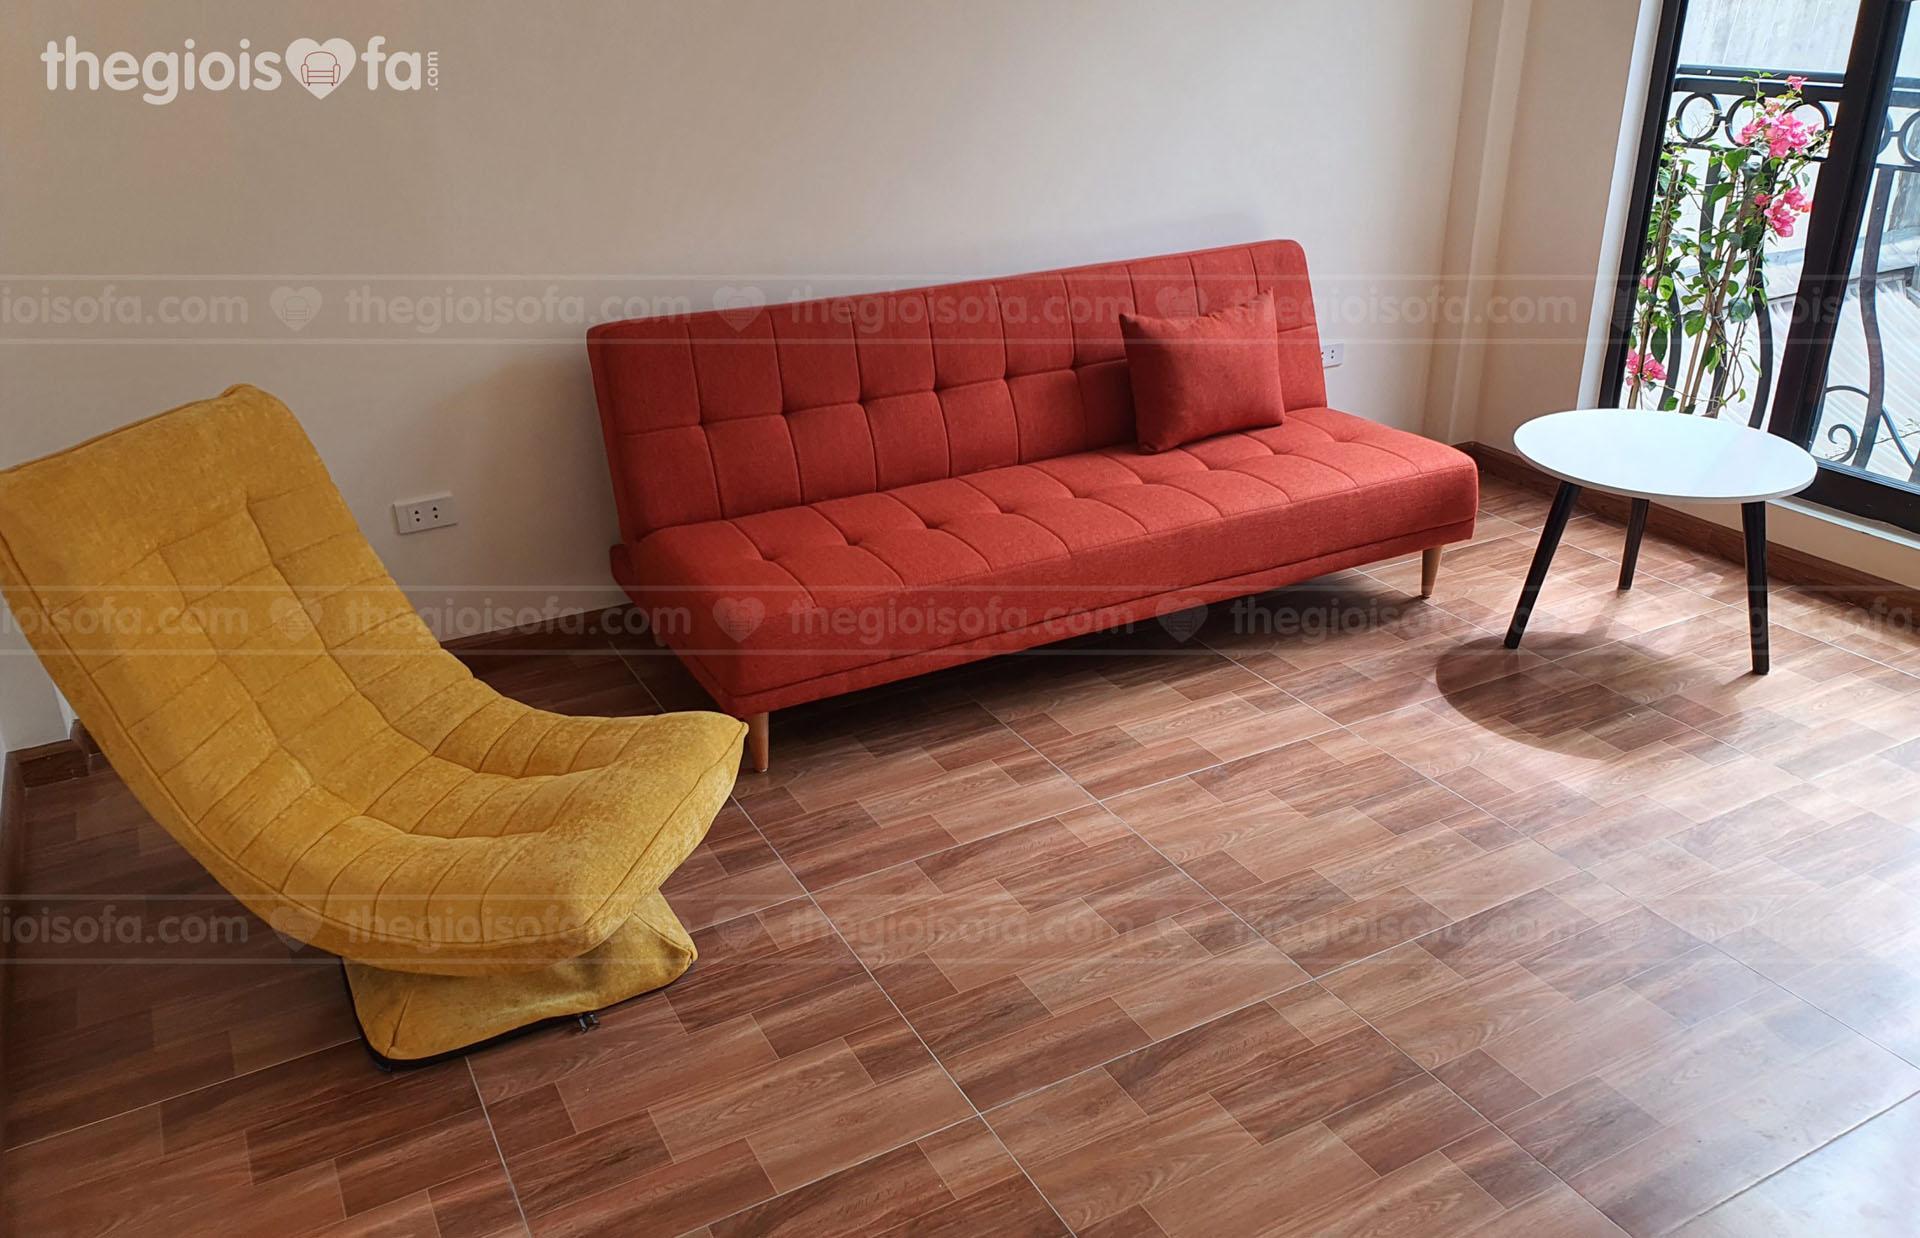 Giao hàng sofa Vera Oranges combo ghế xoay bàn trà cho anh Bình ở Trương Định, Hai Bà Trưng, Hà Nội